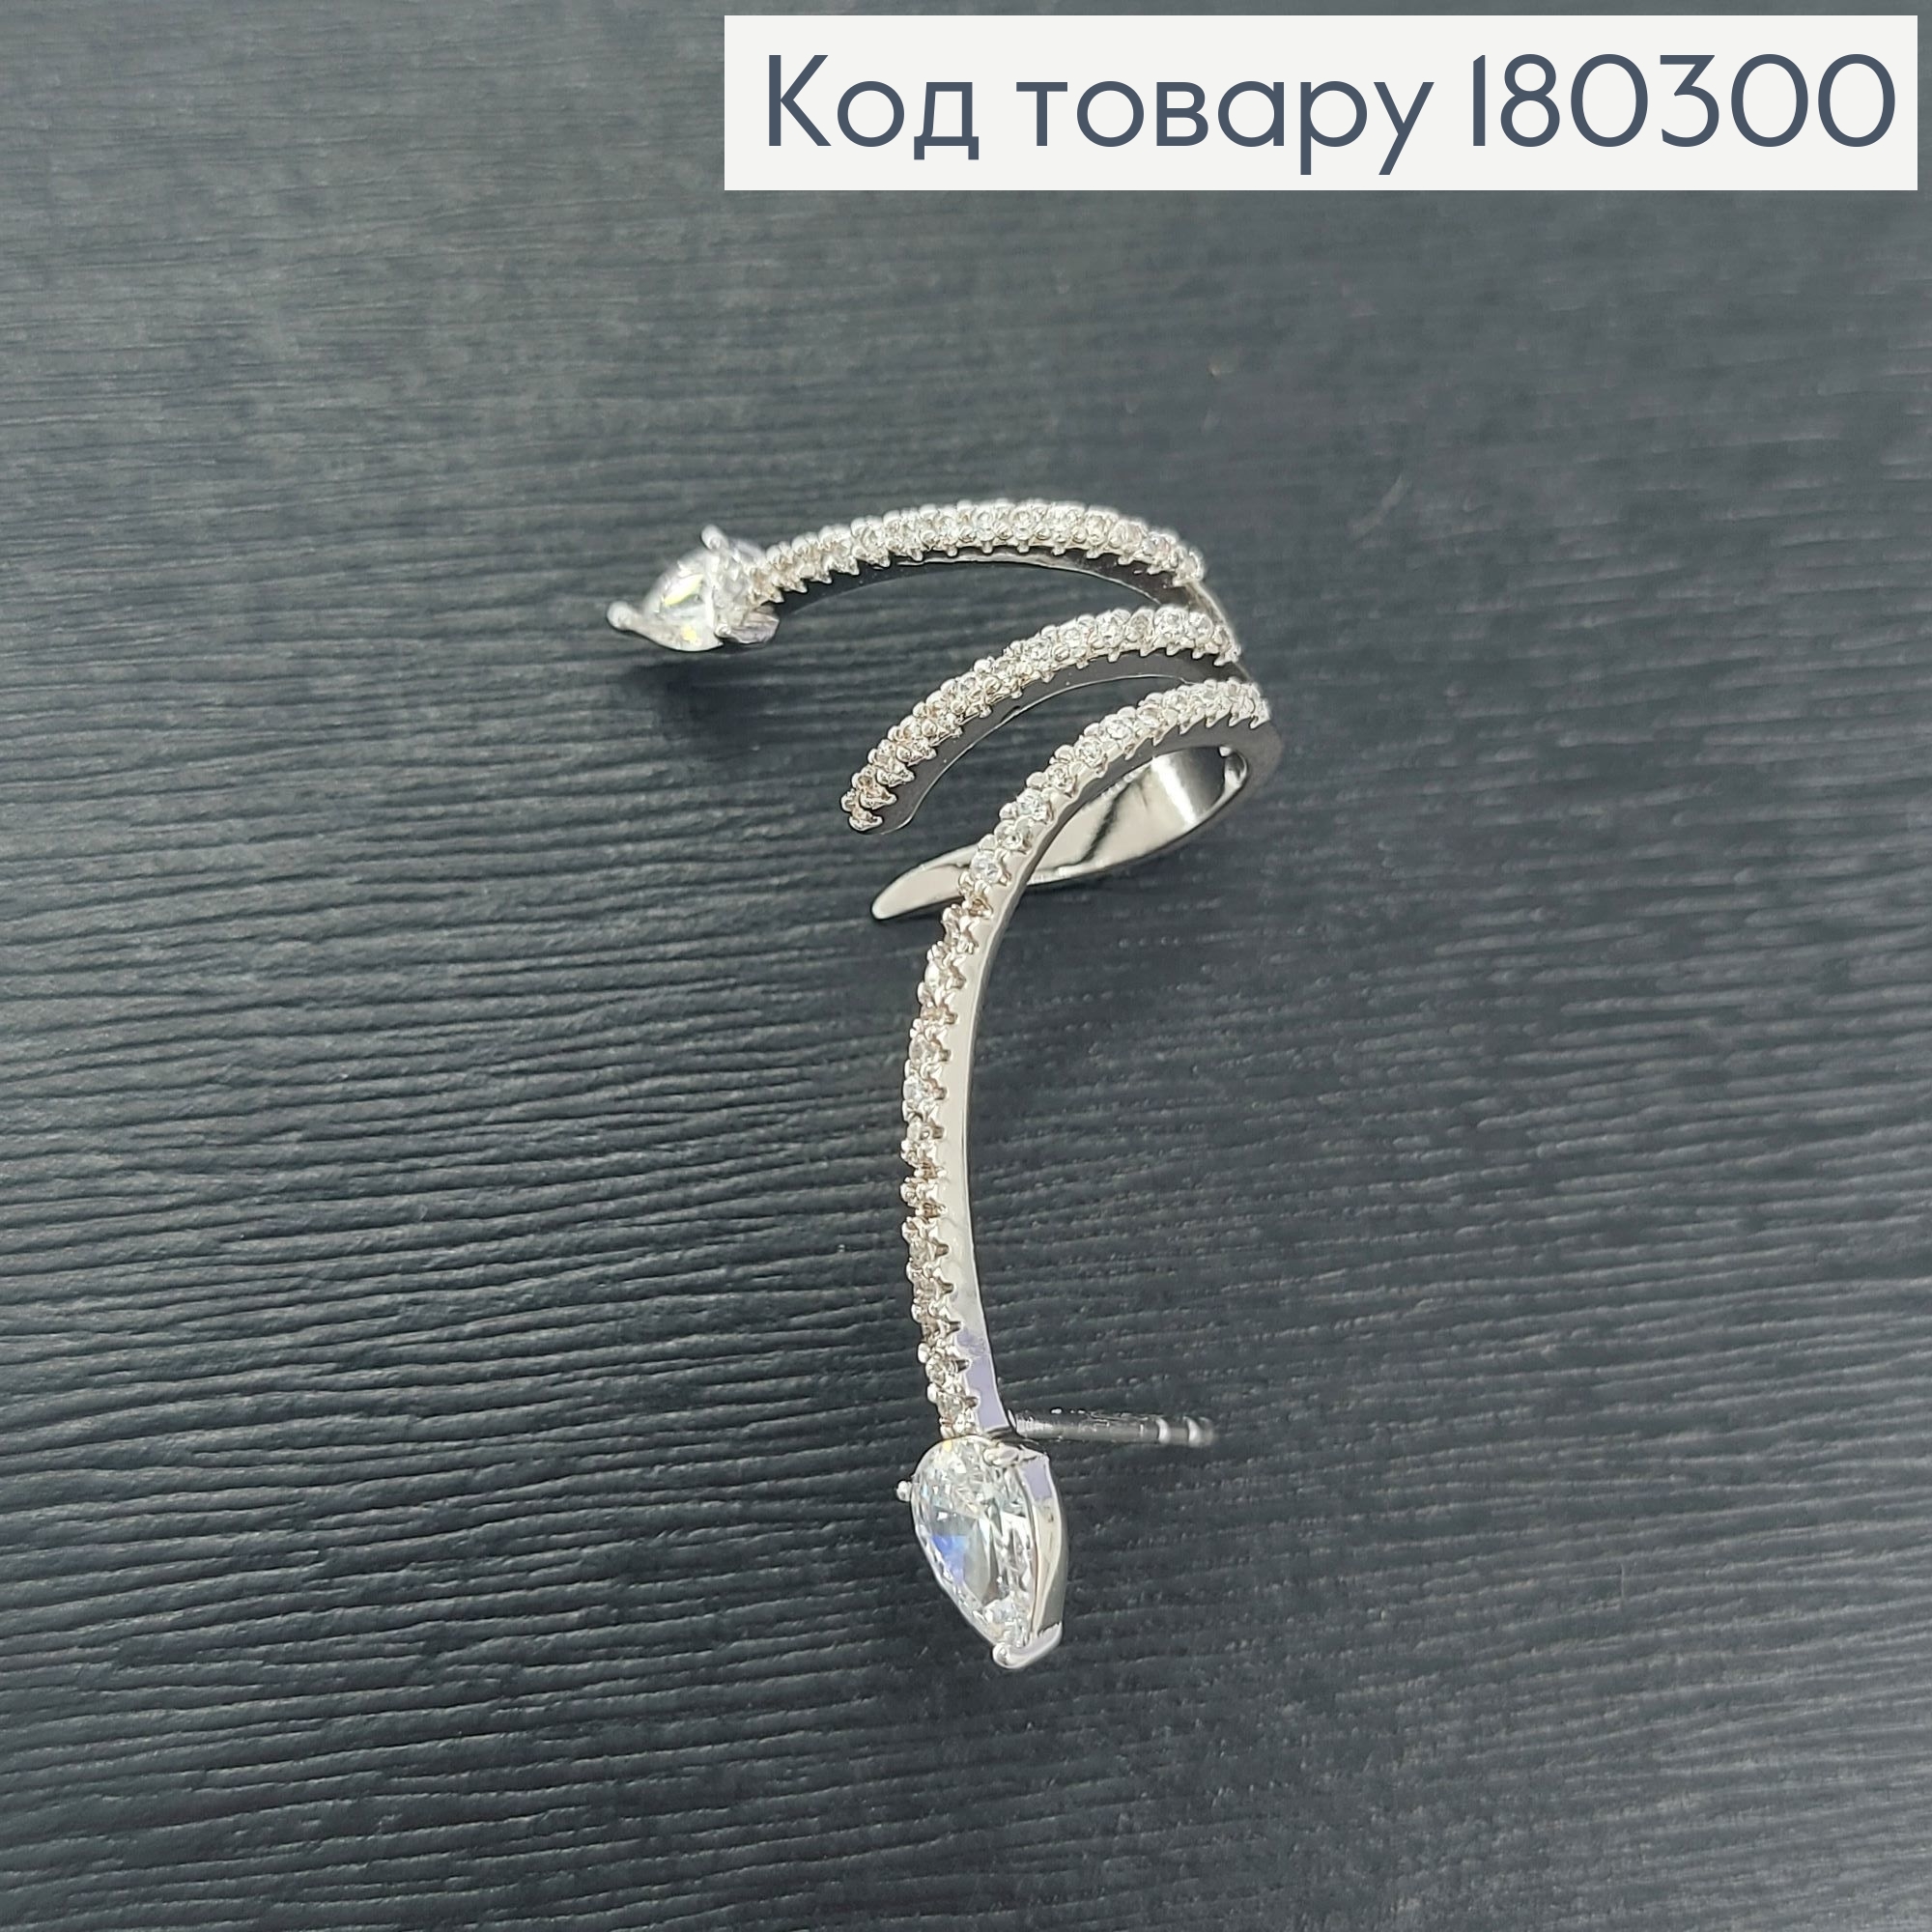 Сережки гвіздки на хрящ змія з камінцем родіроване   Xuping 180300 фото 3